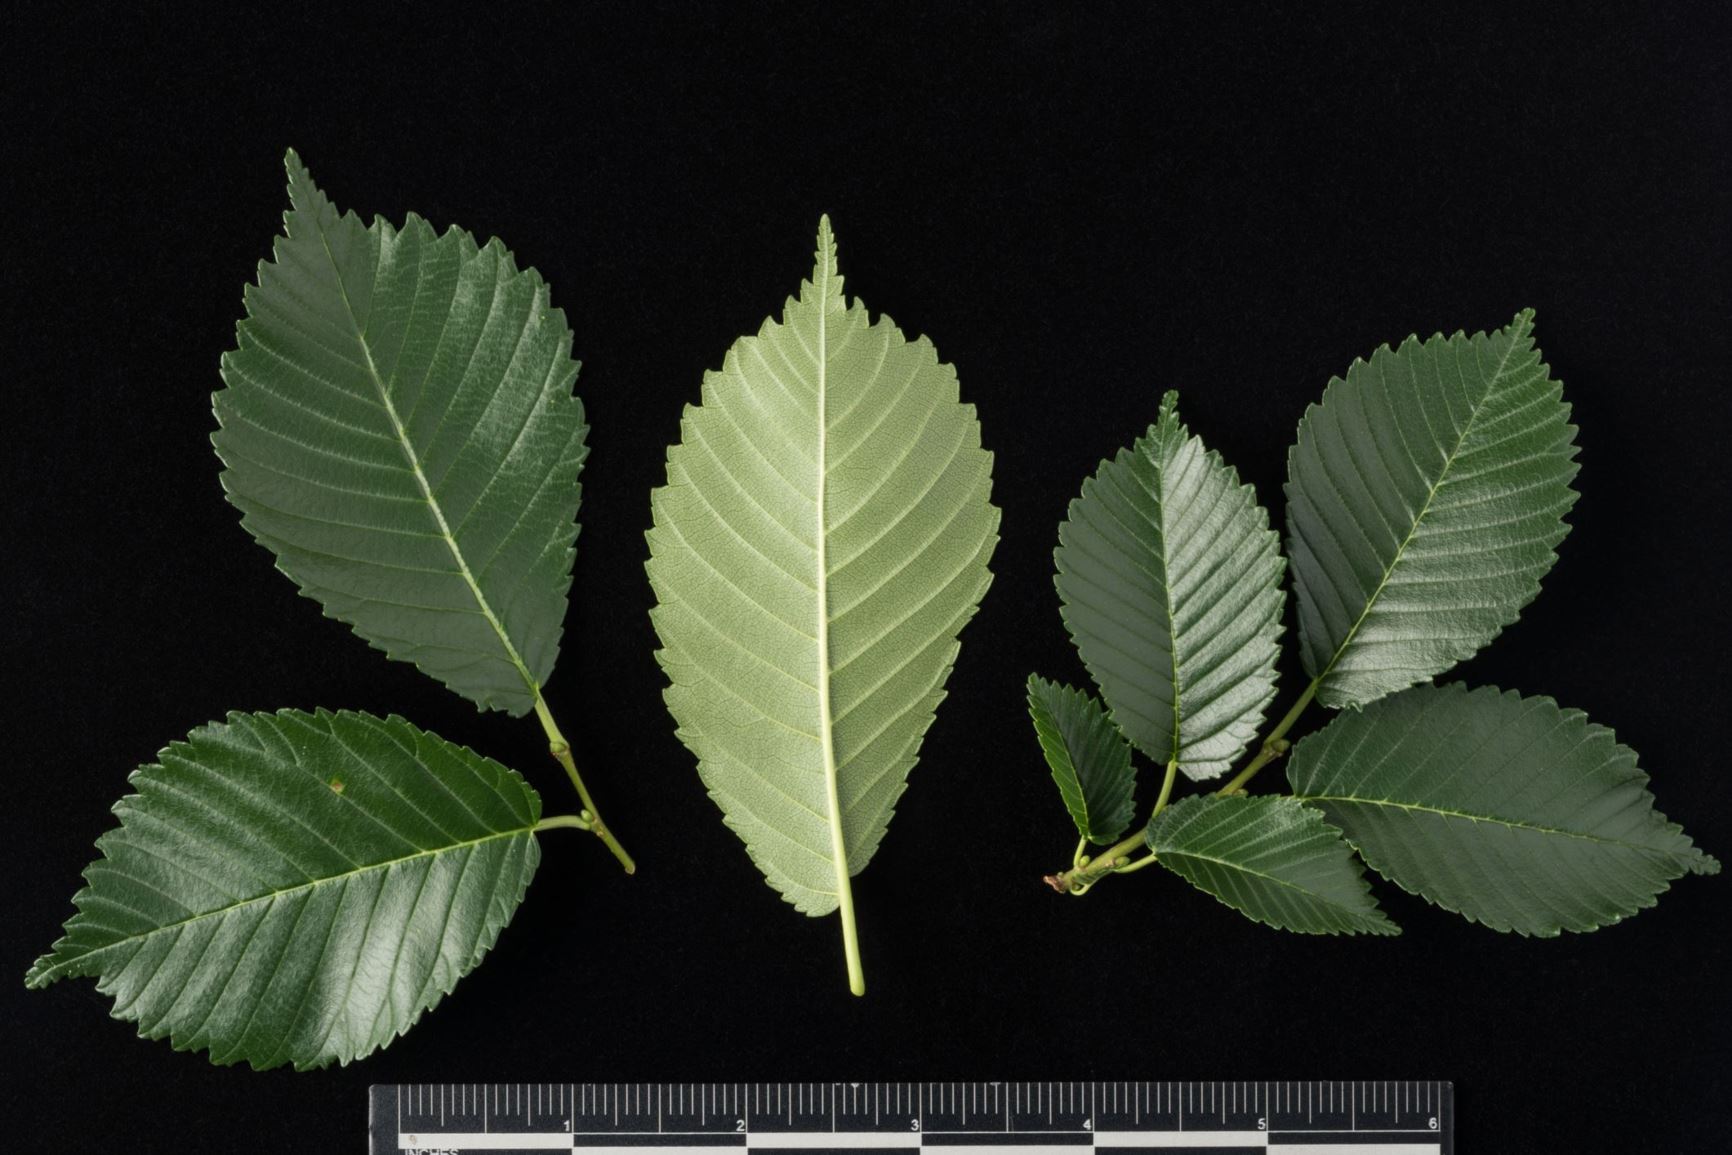 Ulmus davidiana var. japonica 'Morton' Accolade - Accolade Elm